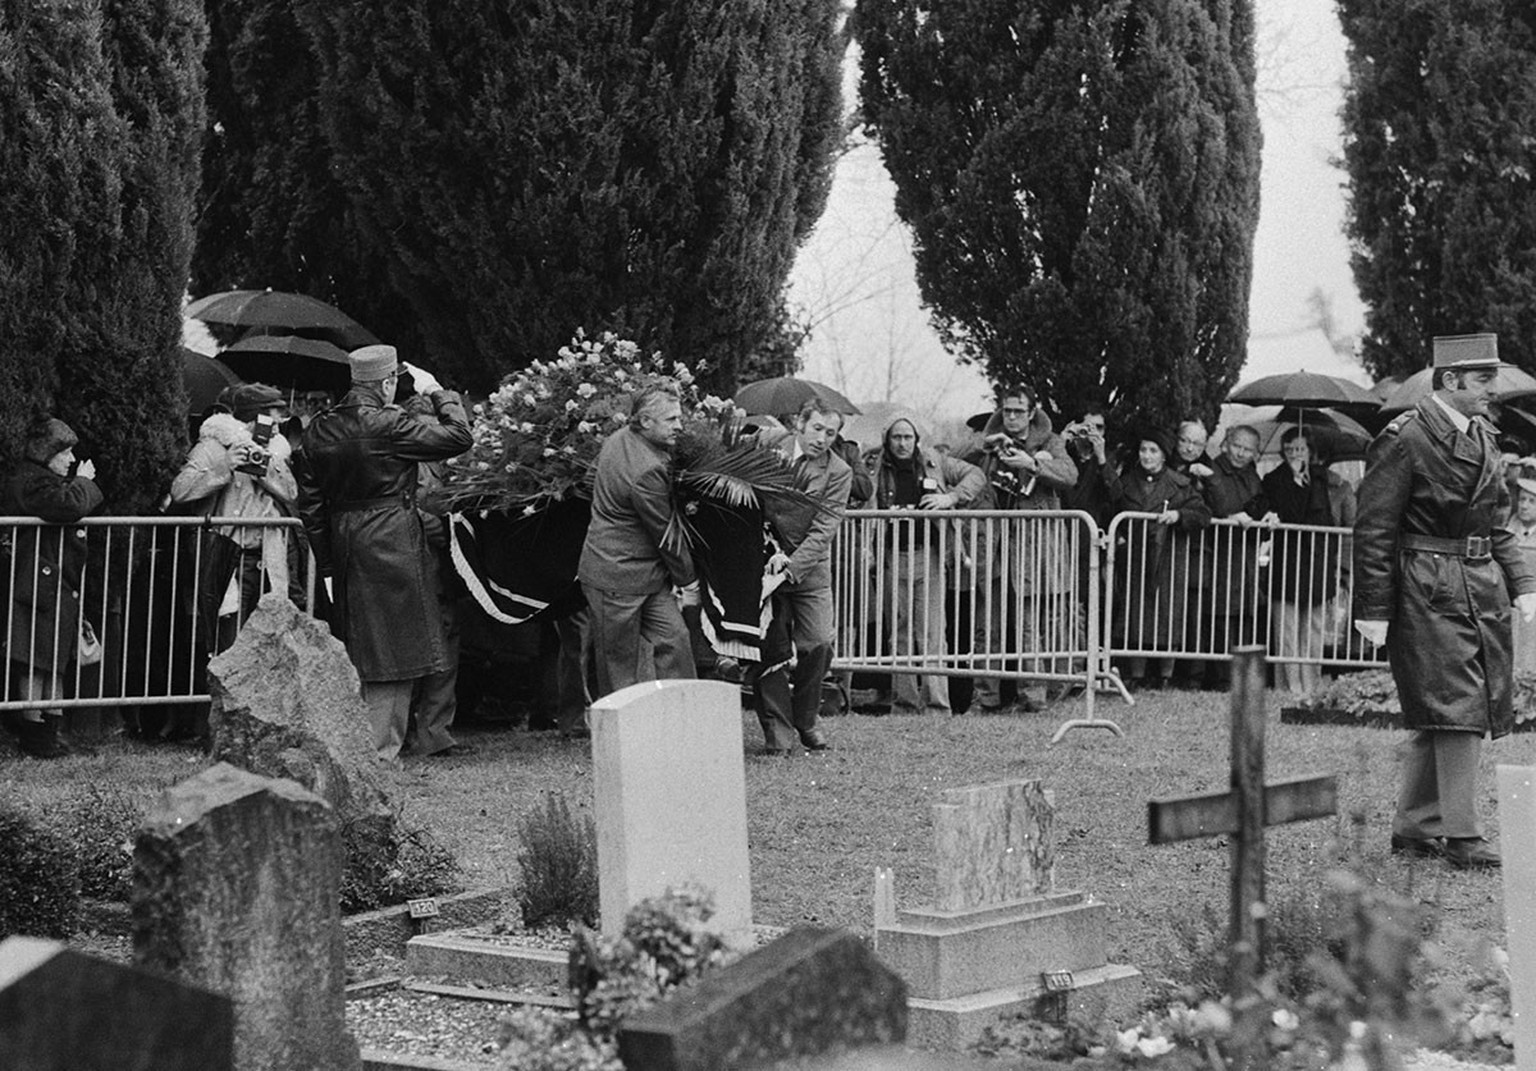 Begräbnis von Charlie Chaplin bei Corsier-sur-Vevey im Dezember 1977.
https://permalink.nationalmuseum.ch/100643230